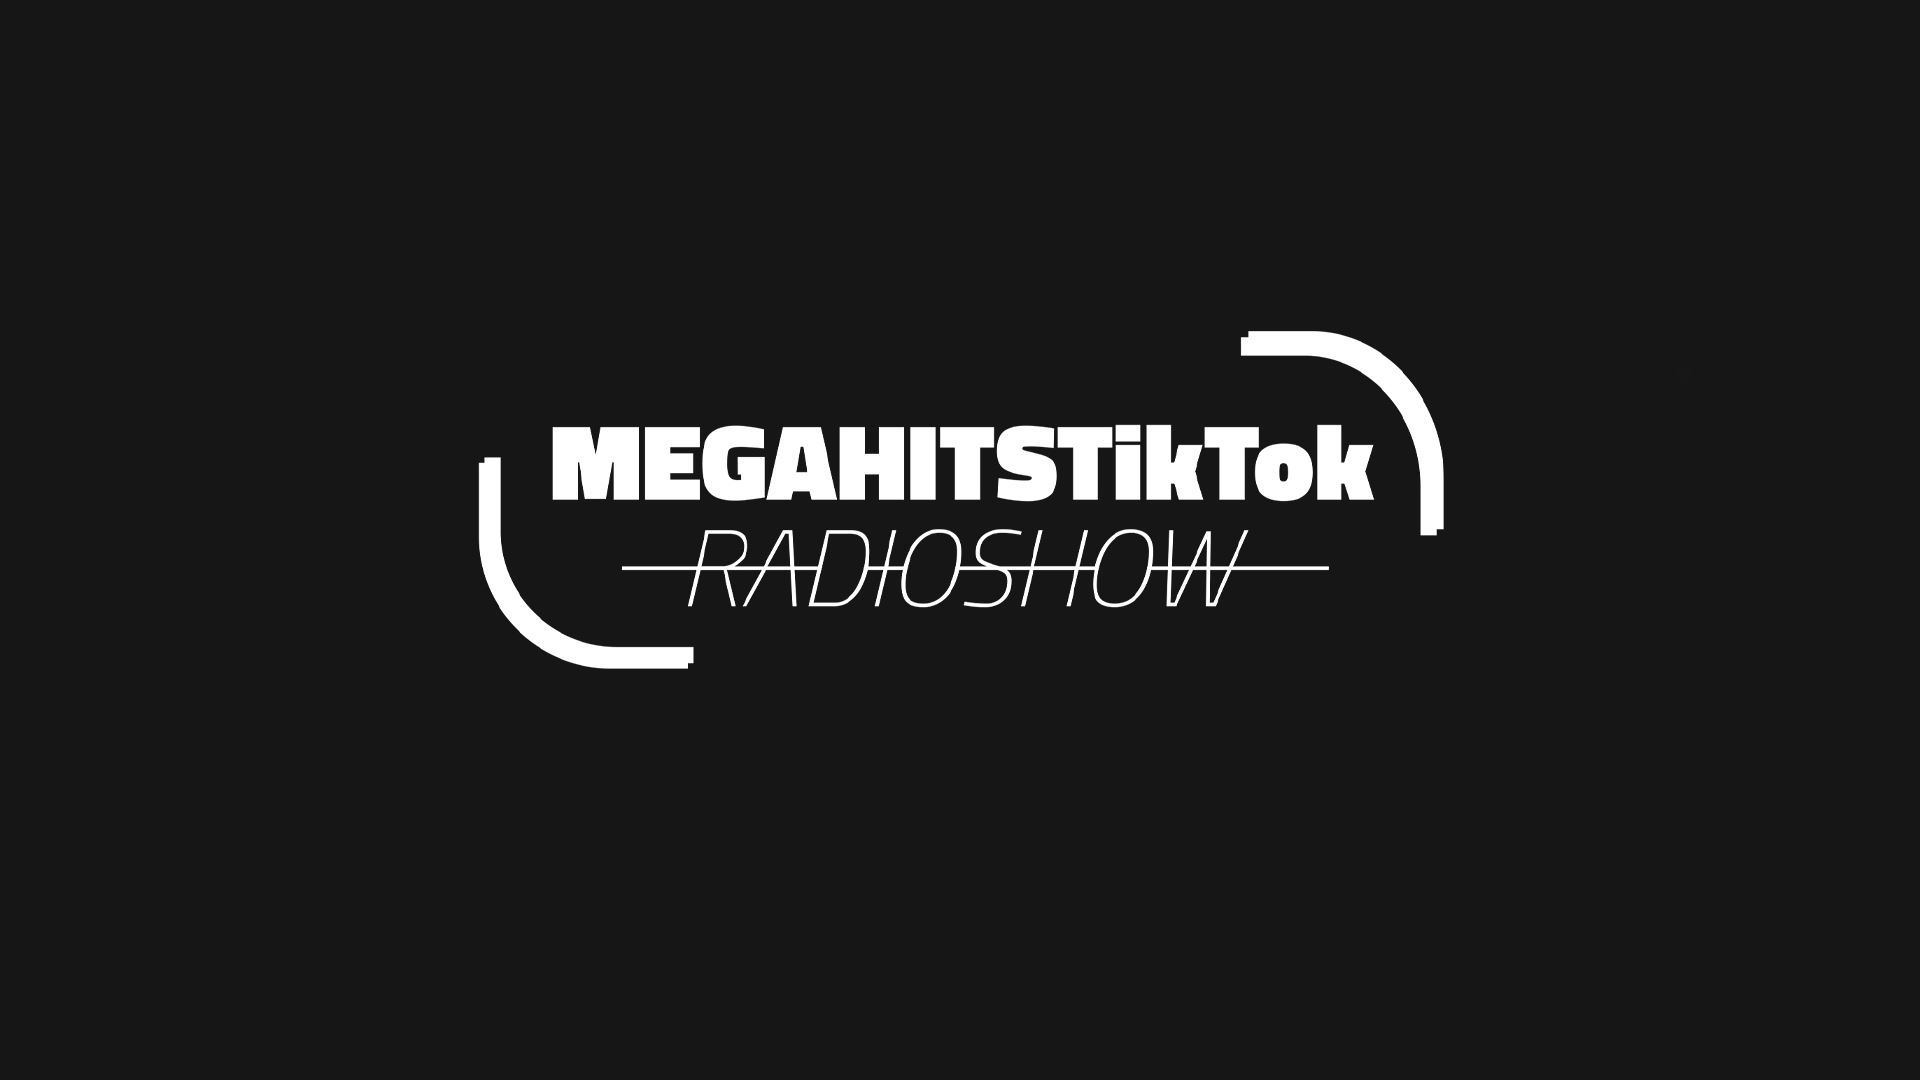 MEGAHITSTIKTOK Radioshow #76